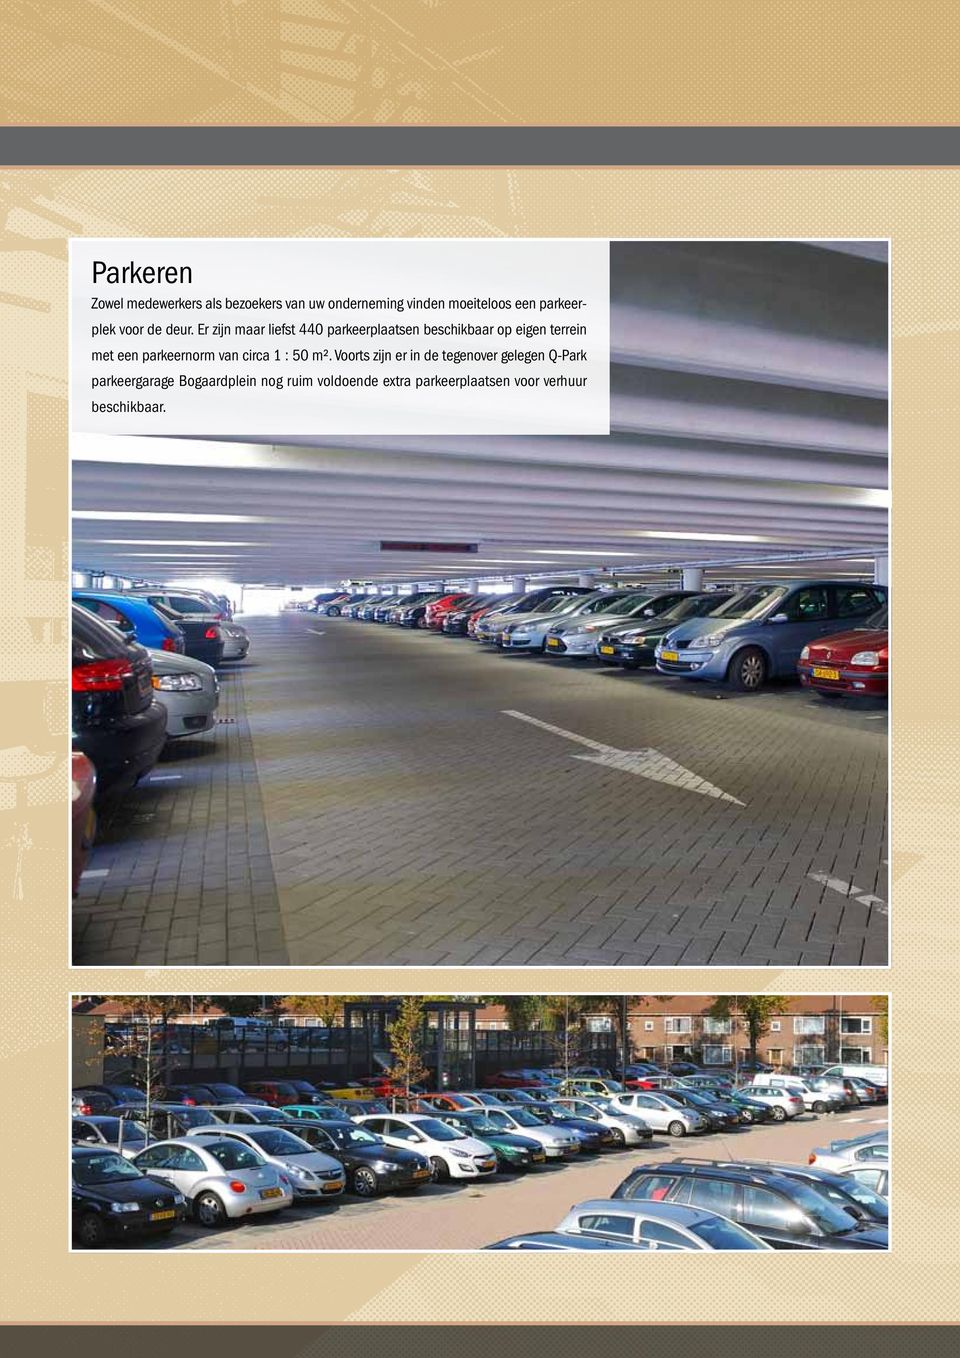 Er zijn maar liefst 440 parkeerplaatsen beschikbaar op eigen terrein met een parkeernorm